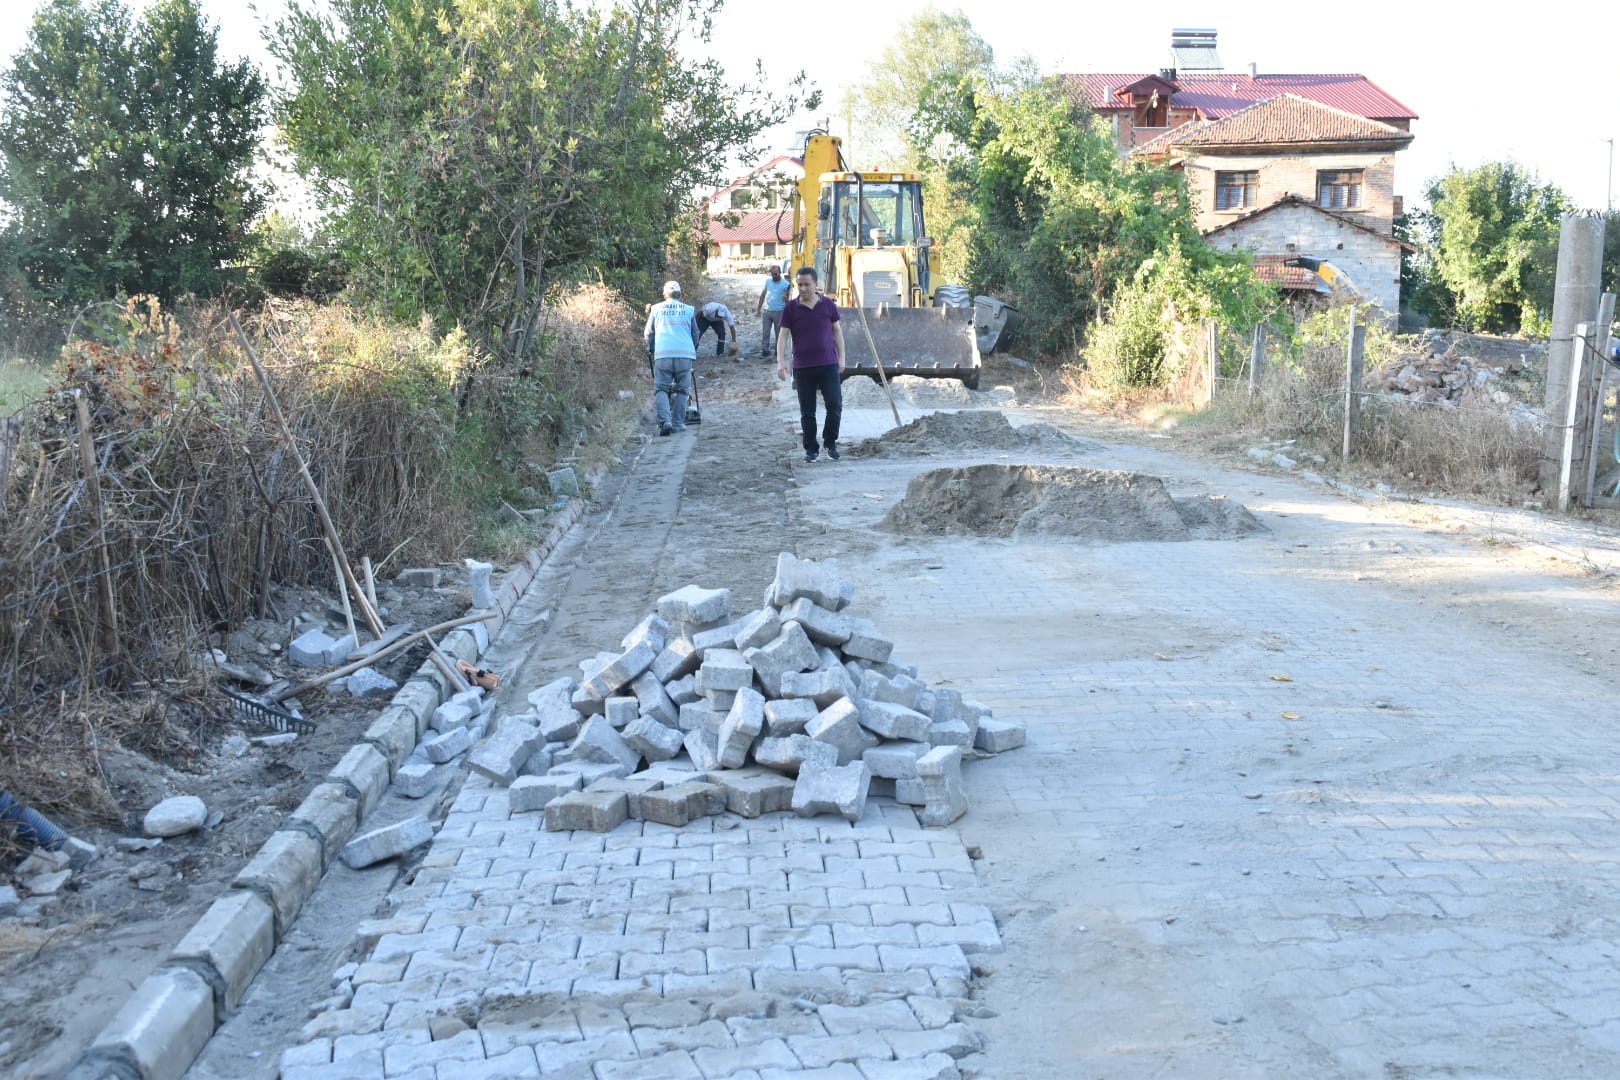 Kozköy Paşa sokakta bozulan kilit parke yolunun bakımı belediye ekiplerimiz tarafından yapılıyor.